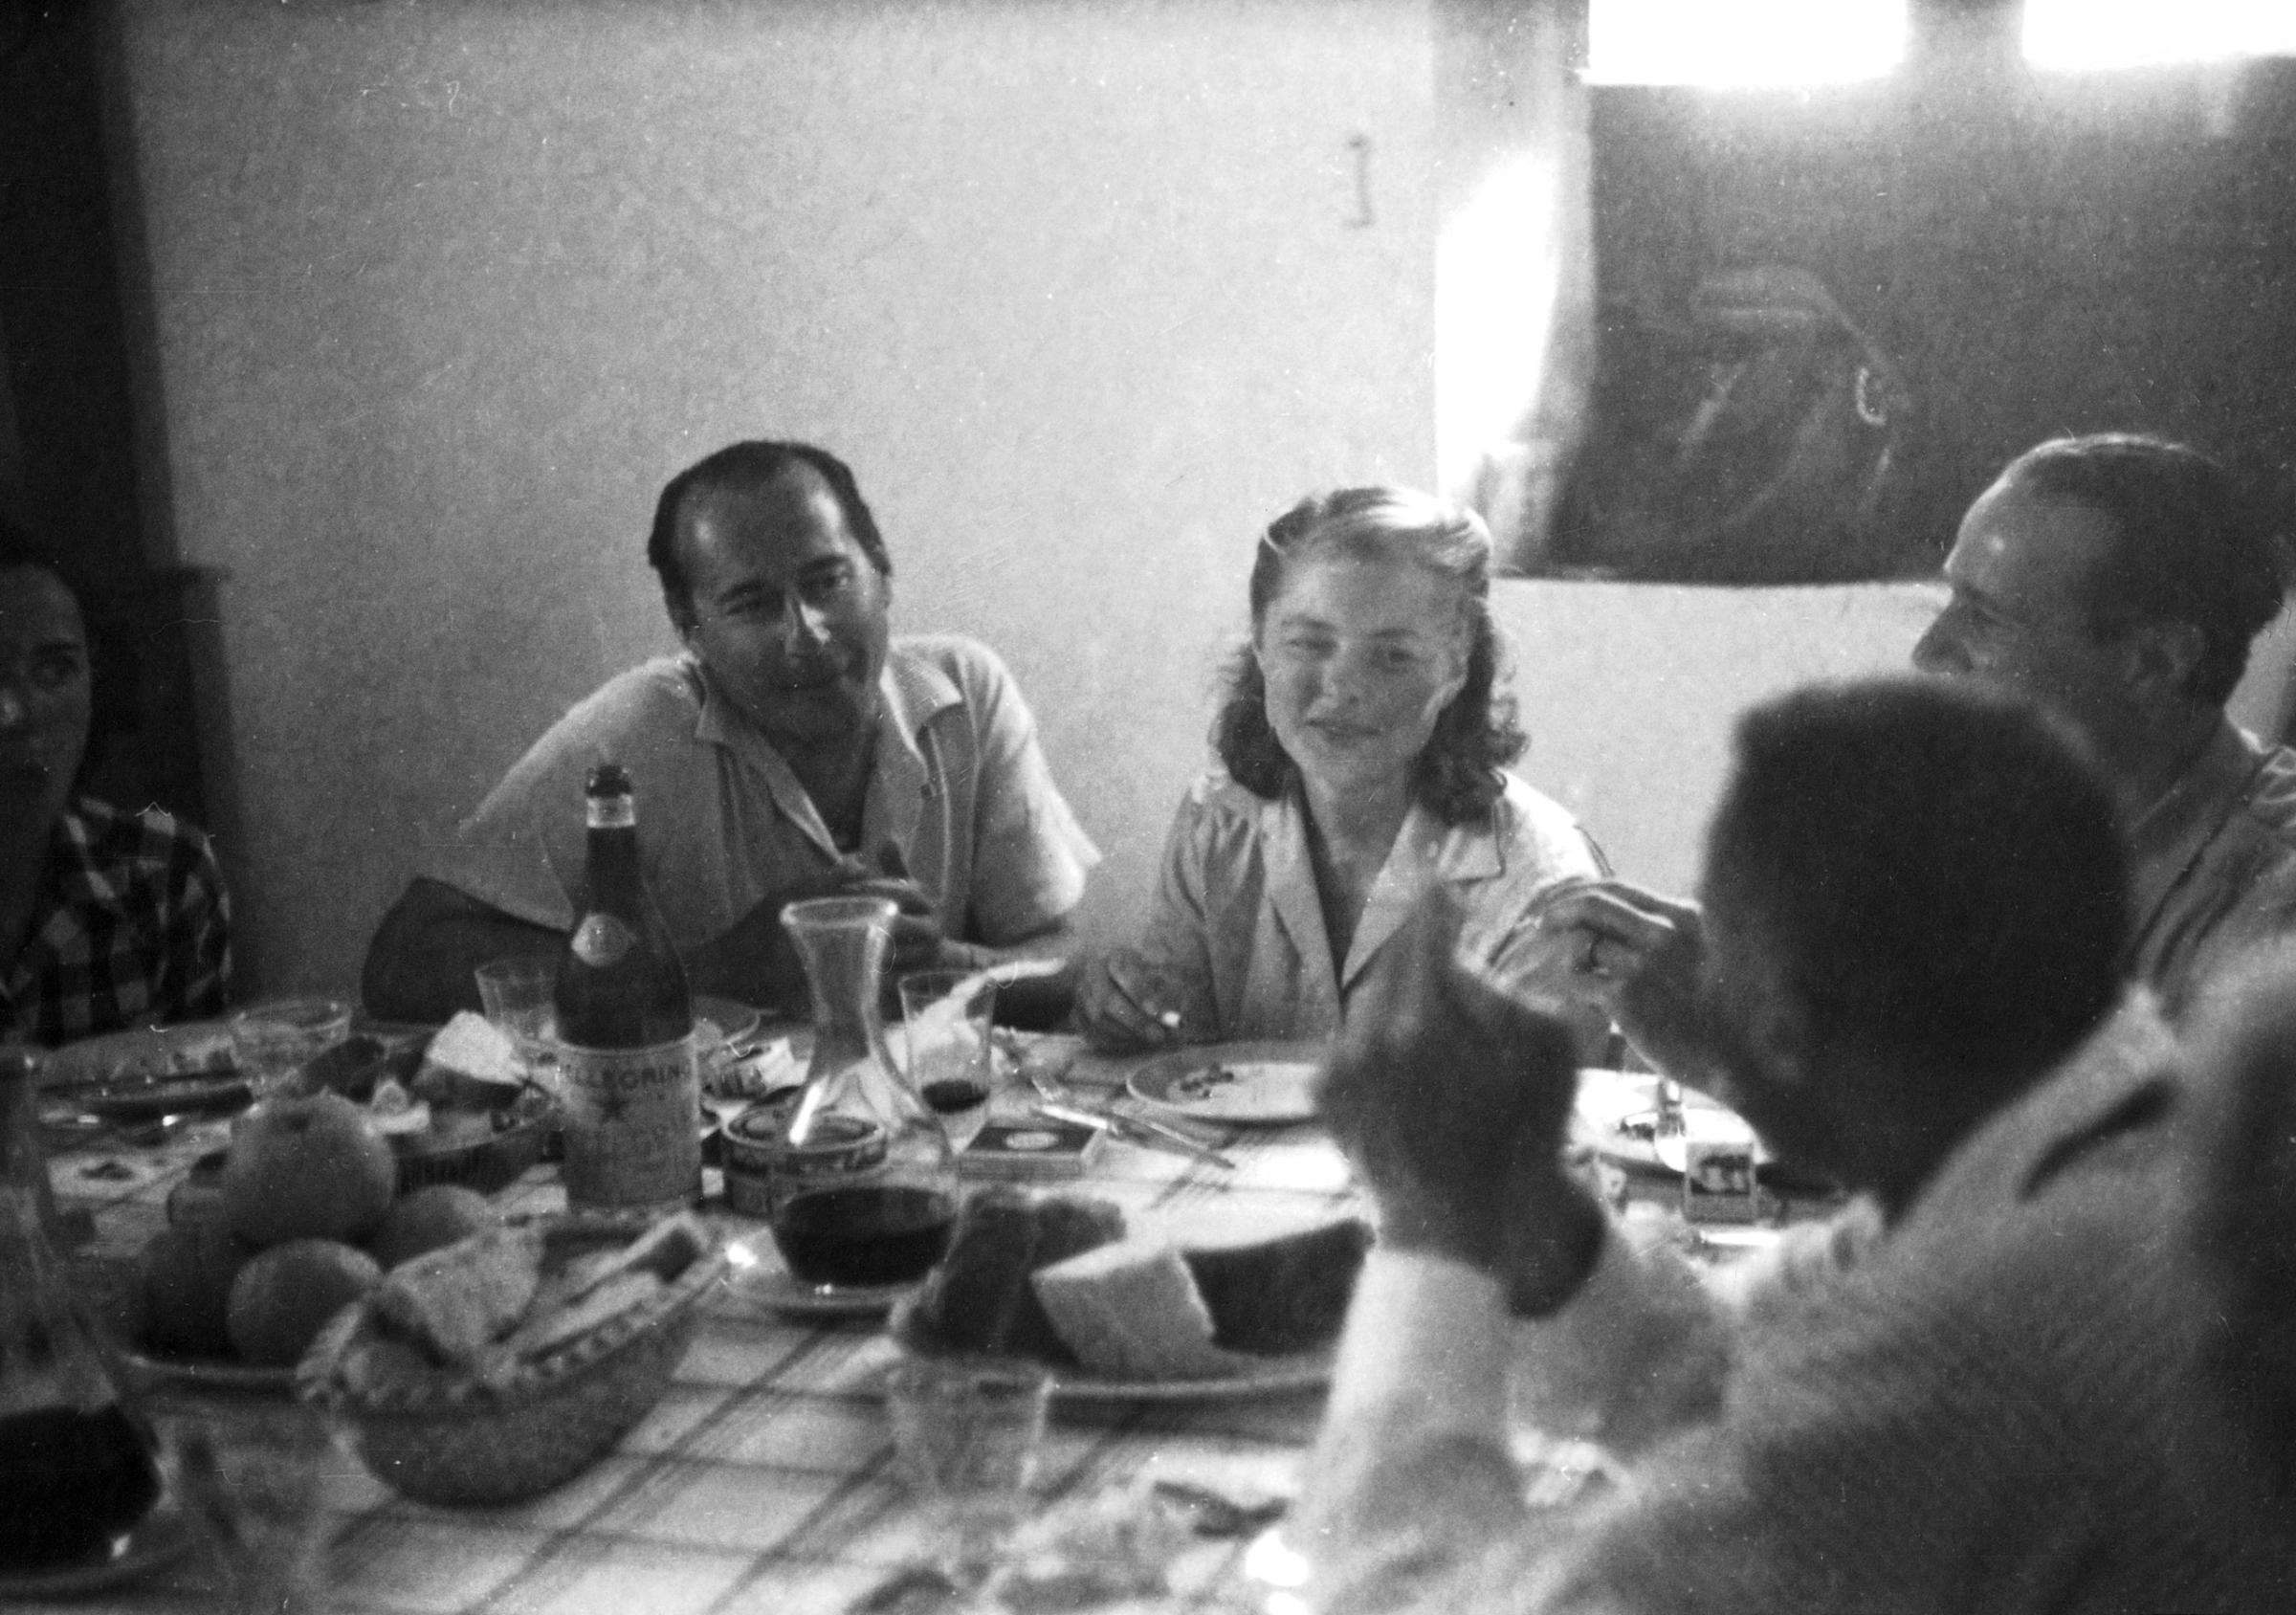 Ingrid Bergman on set for the 1949 film Stromboli